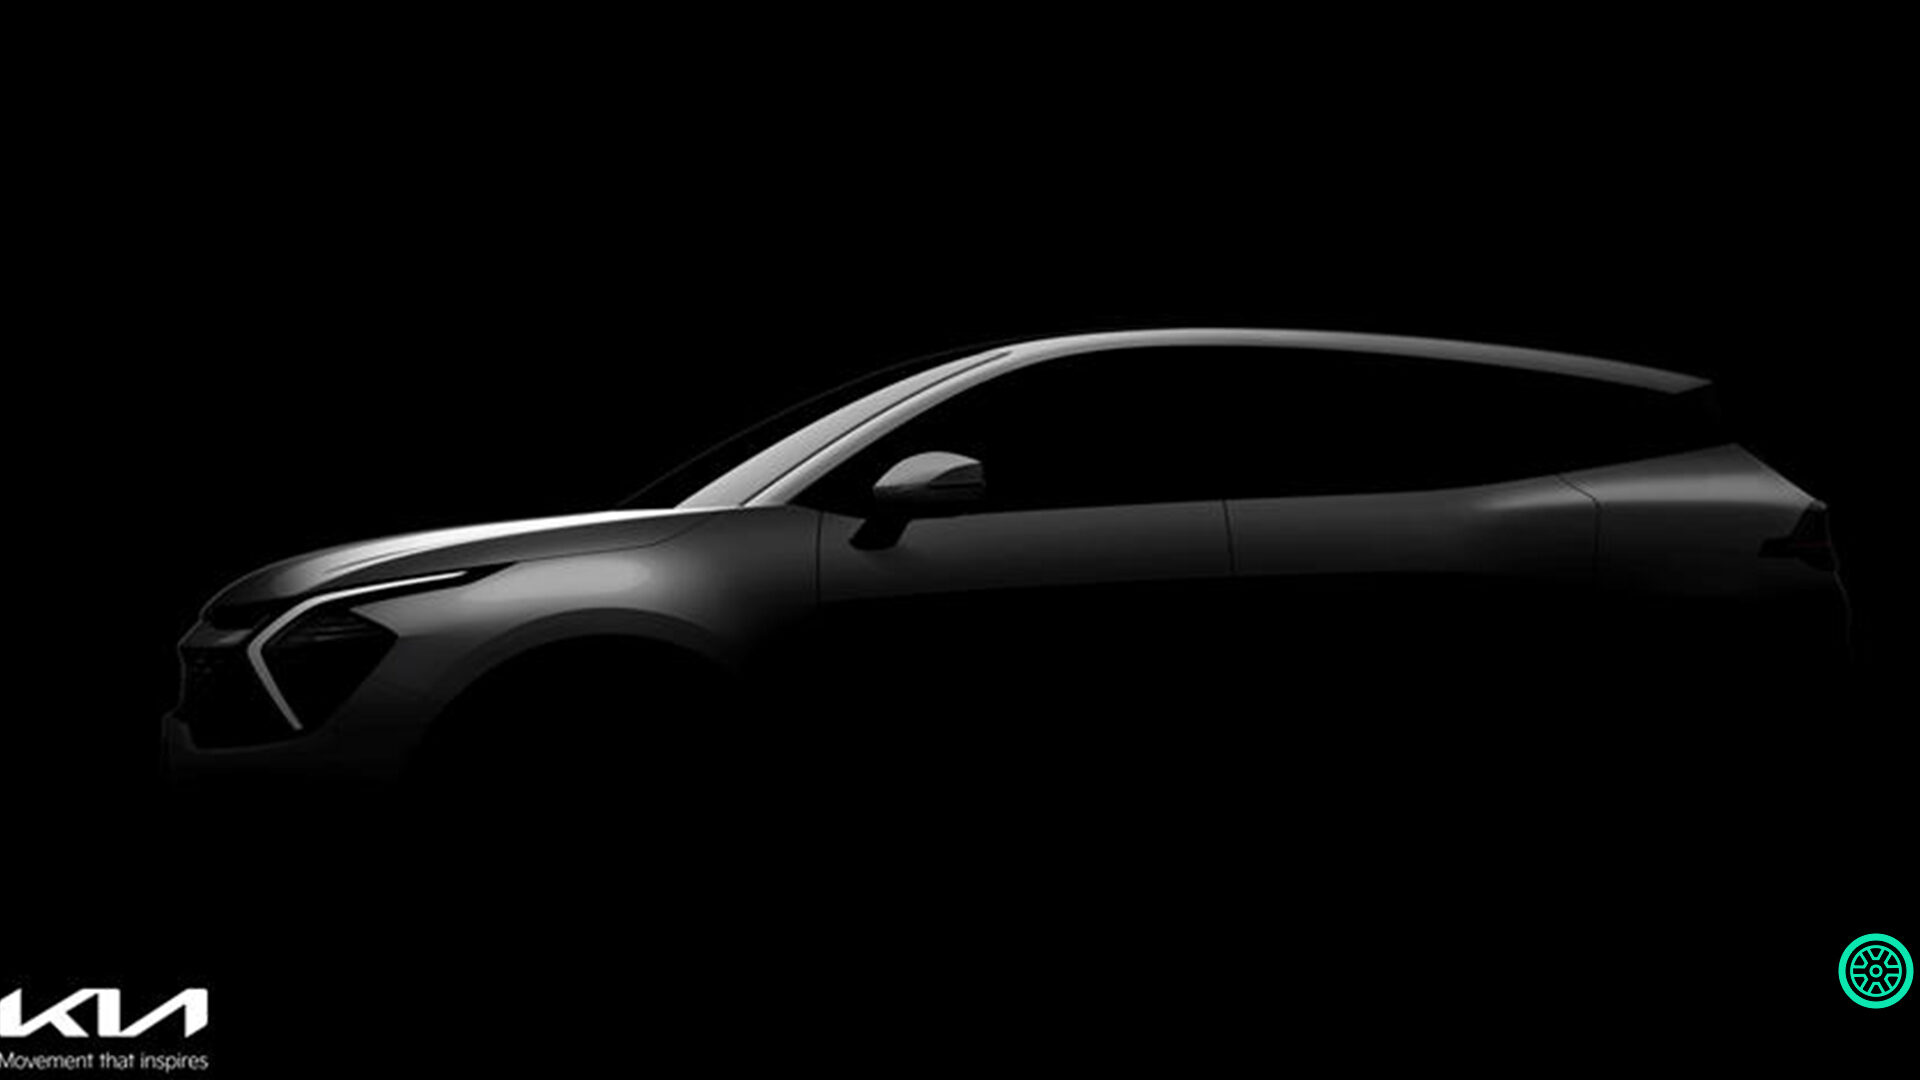 2022 Kia Sportage SUV teaser görüntüleri paylaşıldı 14